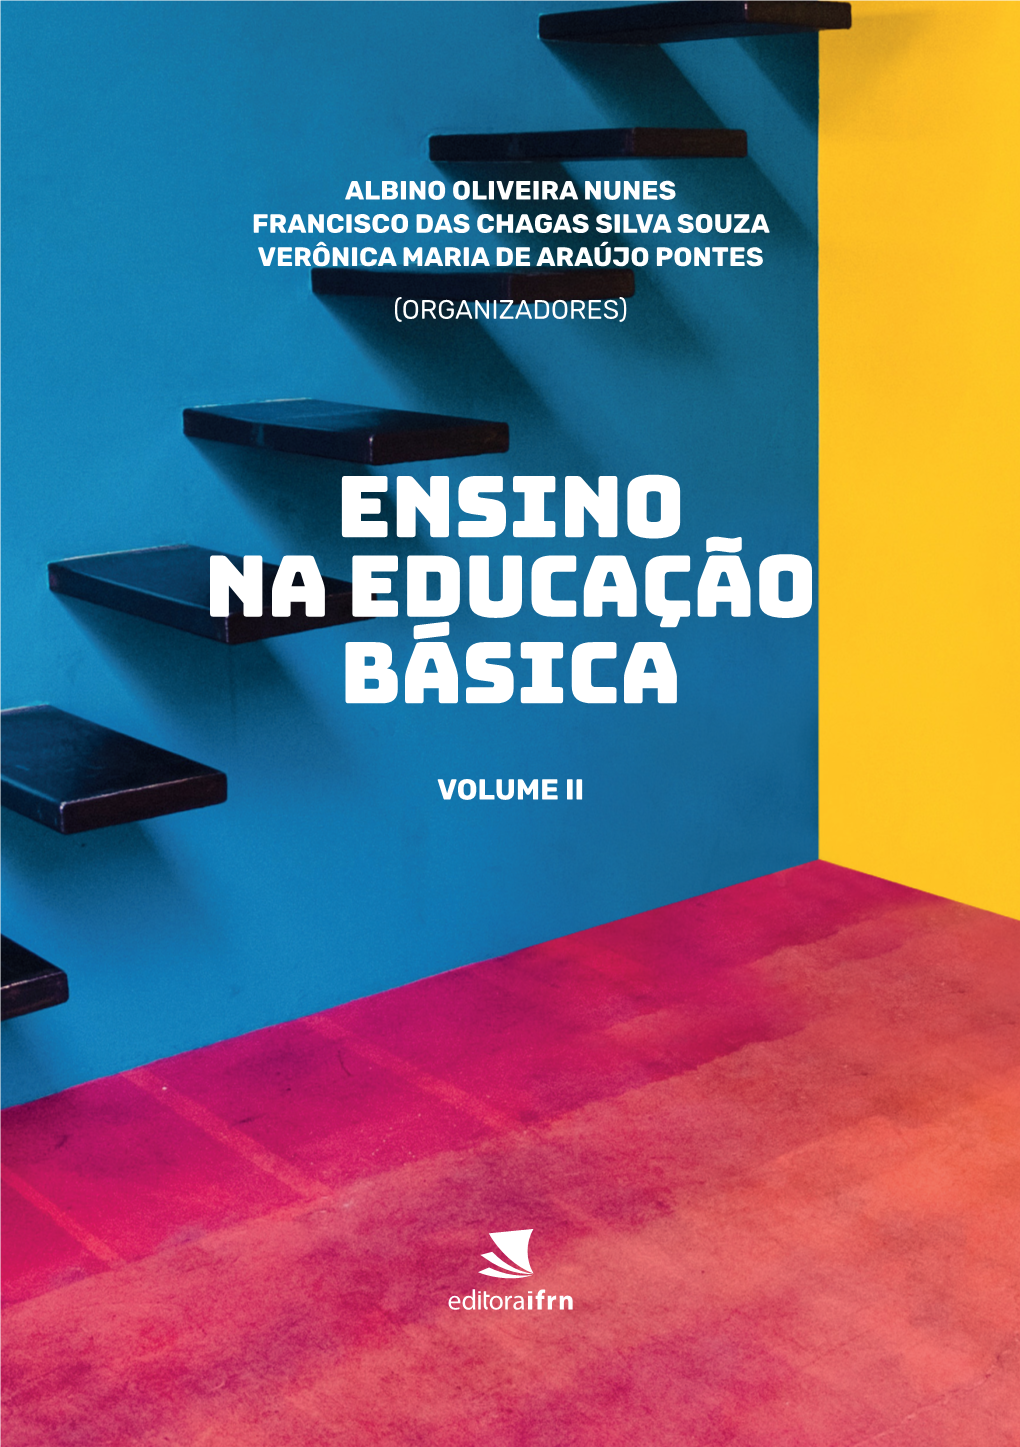 Ensino Na Educação Básica Volume Ii Albino Oliveira Nunes Francisco Das Chagas Silva Souza Verônica Maria De Araújo Pontes (Organizadores)